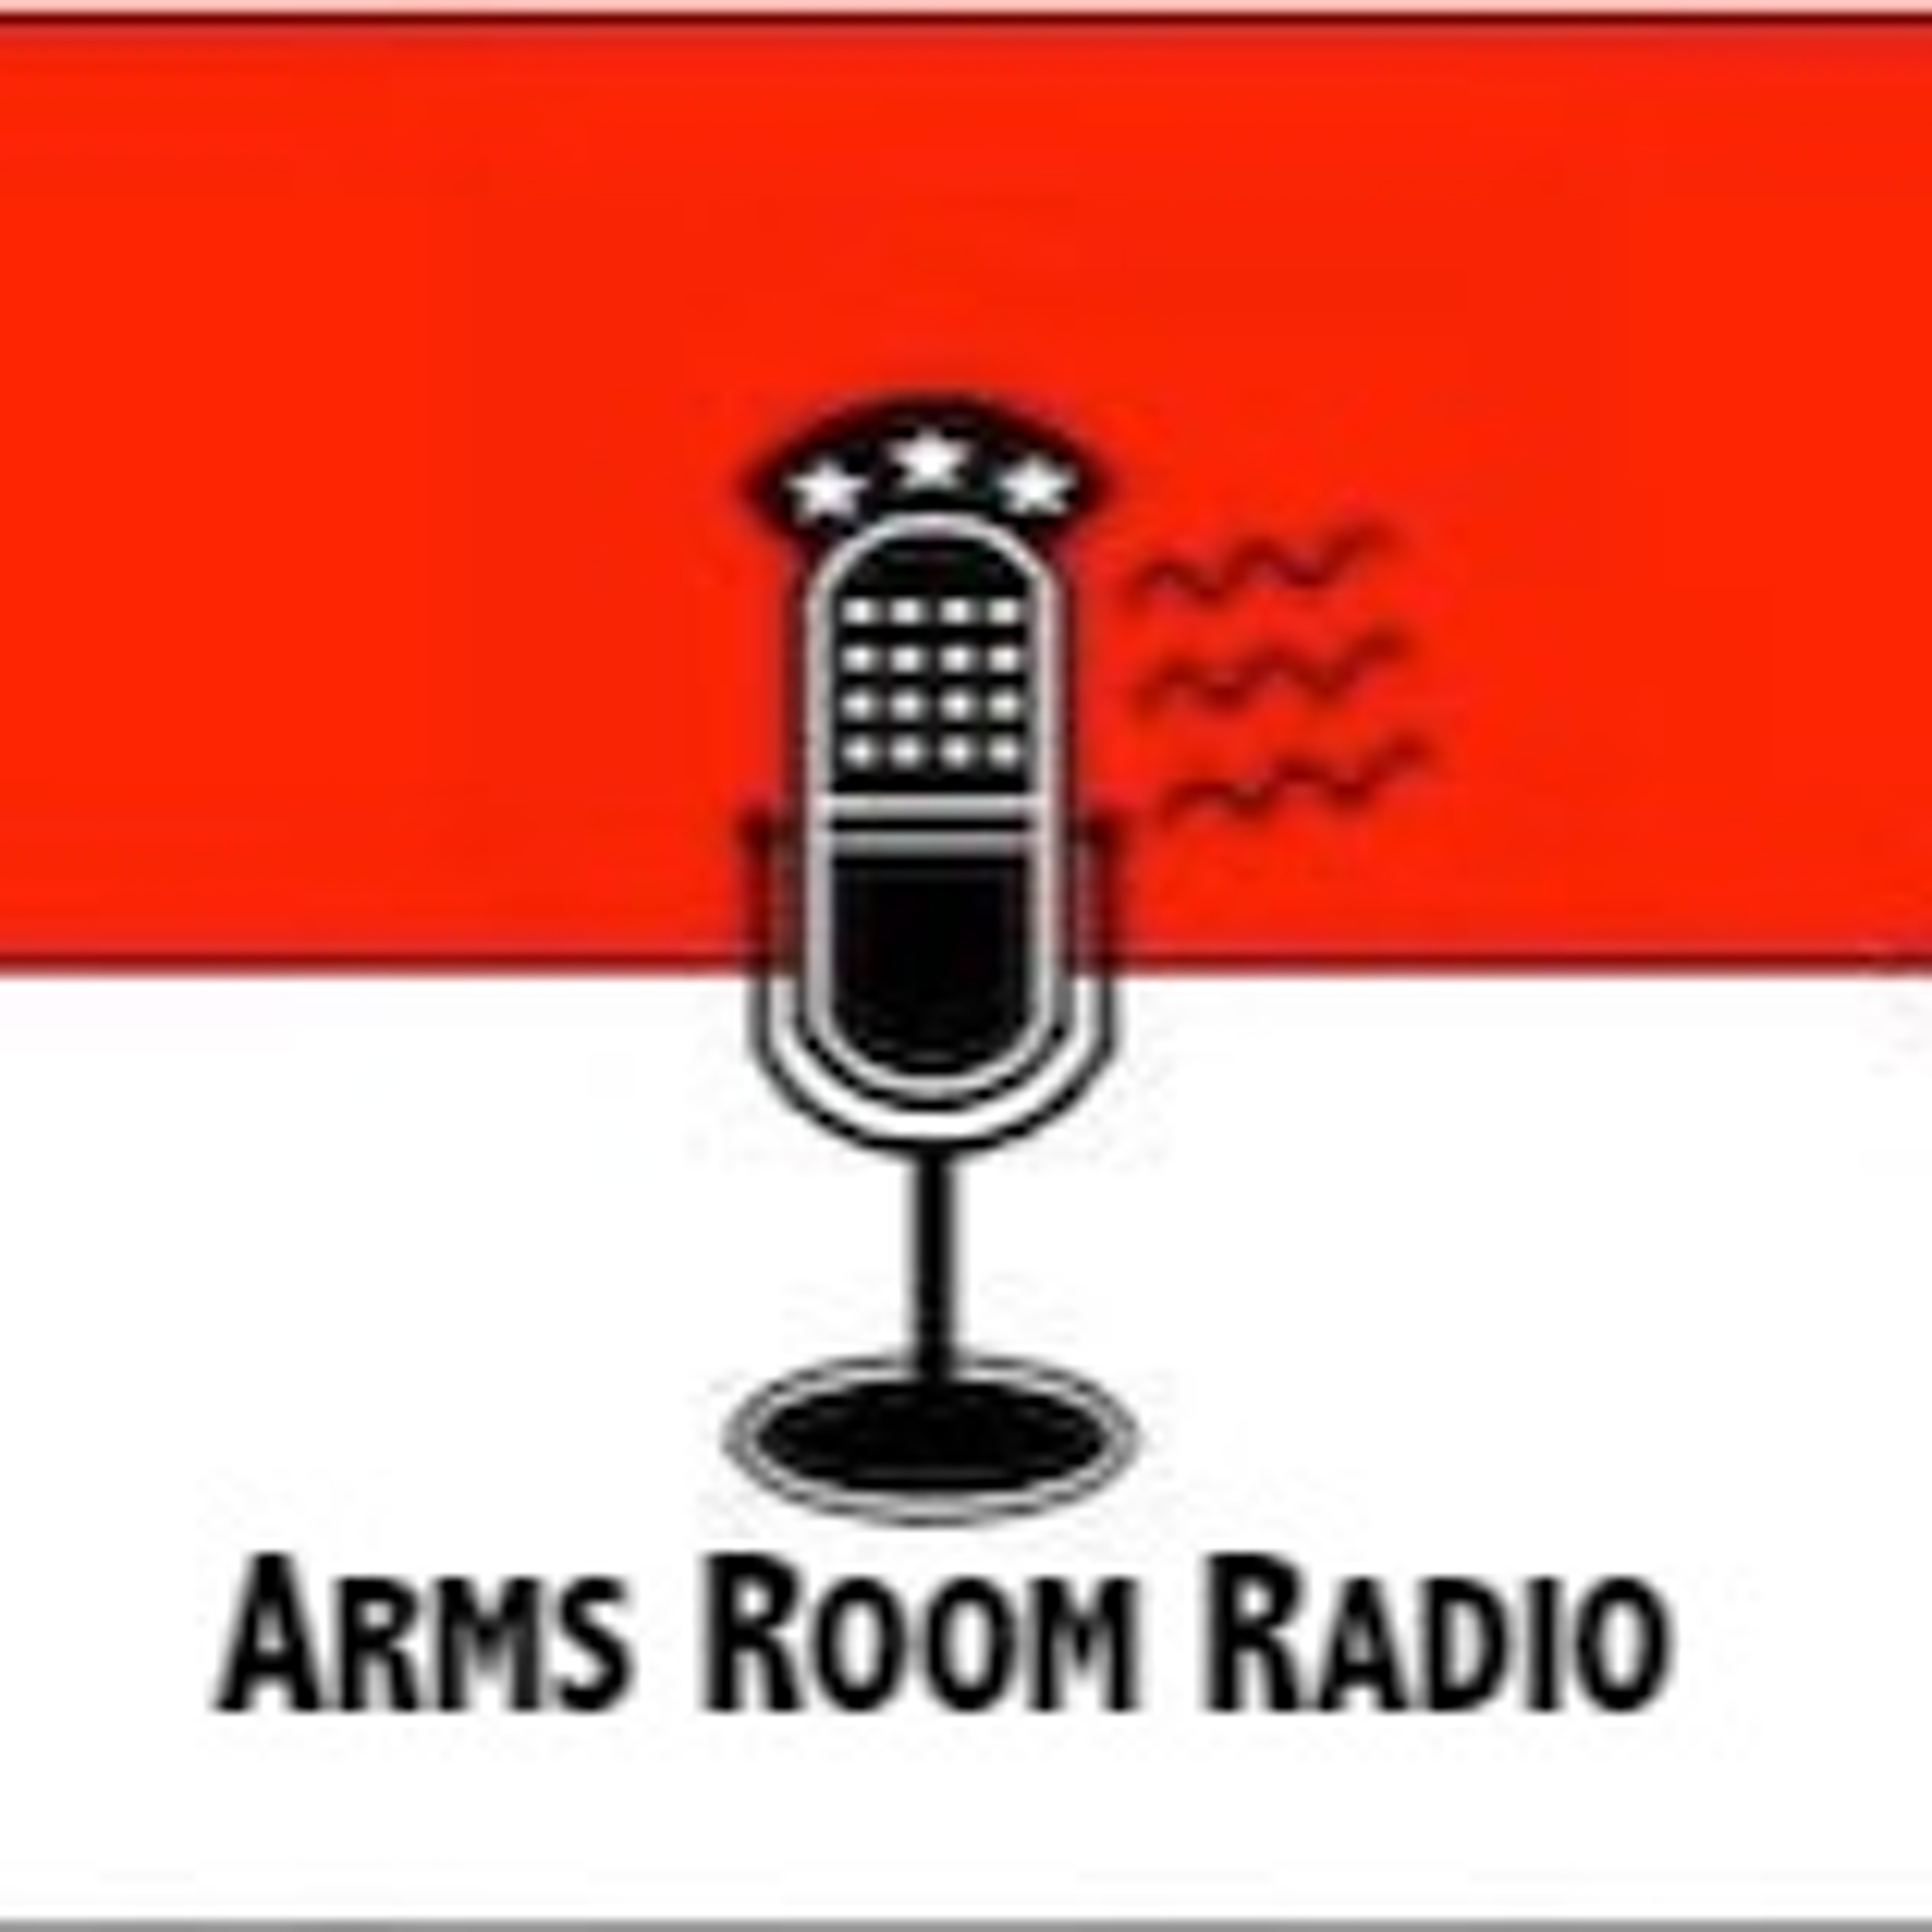 ArmsRoomRadio 09.05.20 Buy backs and fake gun parts